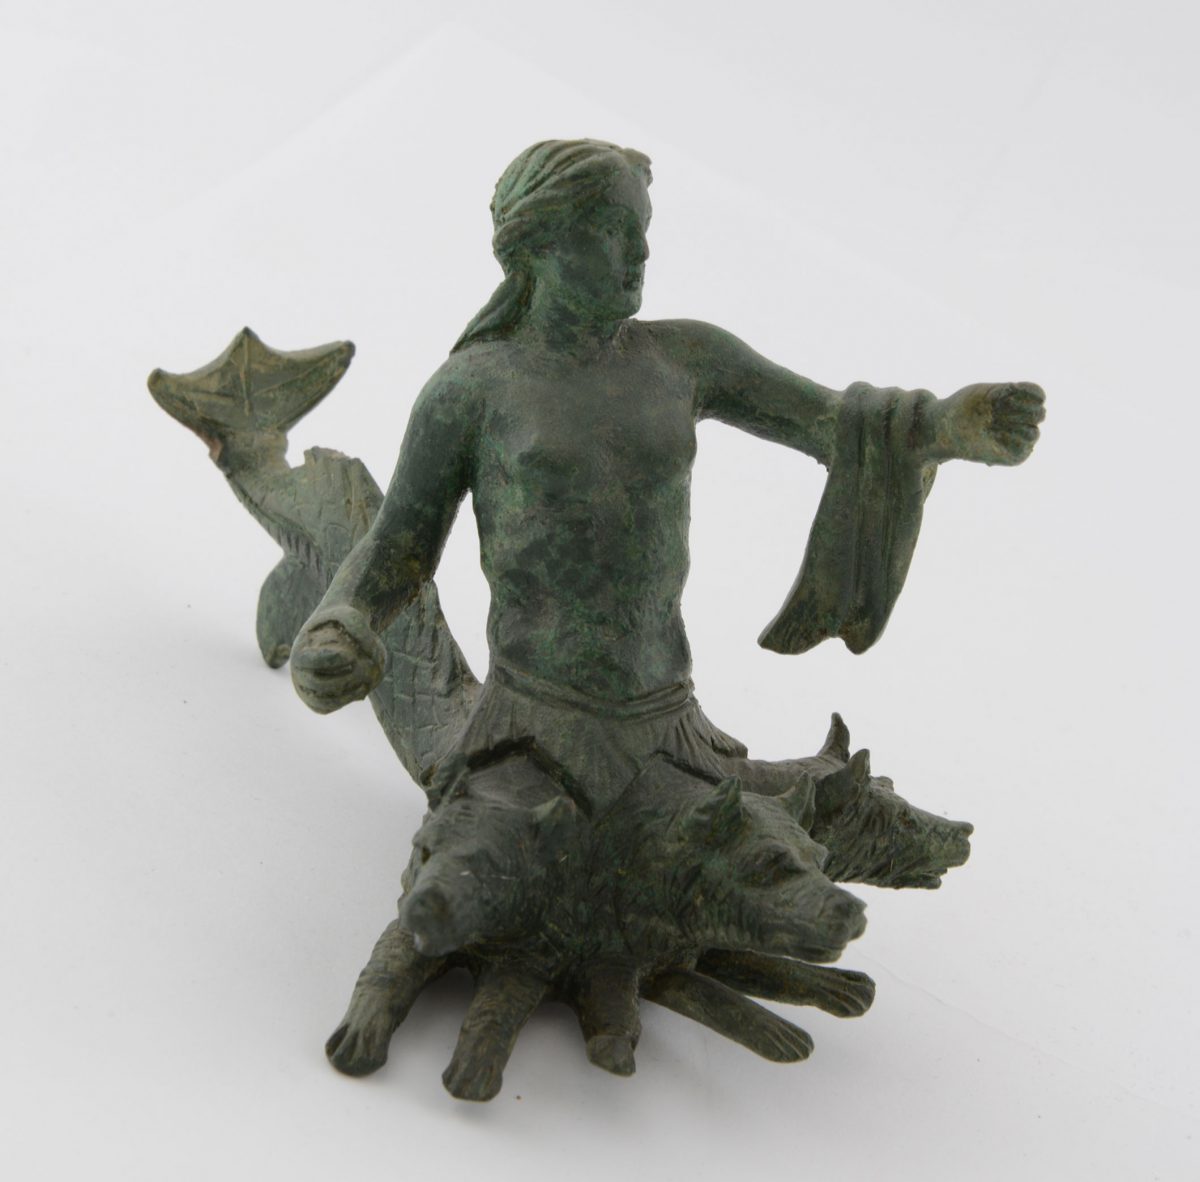 Χάλκινο ειδώλιο Σκύλλας που απειλεί με πέτρα τον αντίπαλο, ενώ τον αποκρούει με το αριστερό χέρι, κρατώντας πηδάλιο ή κουπί. Από το Καταφύλλι Καρδίτσας, τέλη 4ου αι. π.Χ. (© TAΠΑ/Εθνικό Αρχαιολογικό Μουσείο)